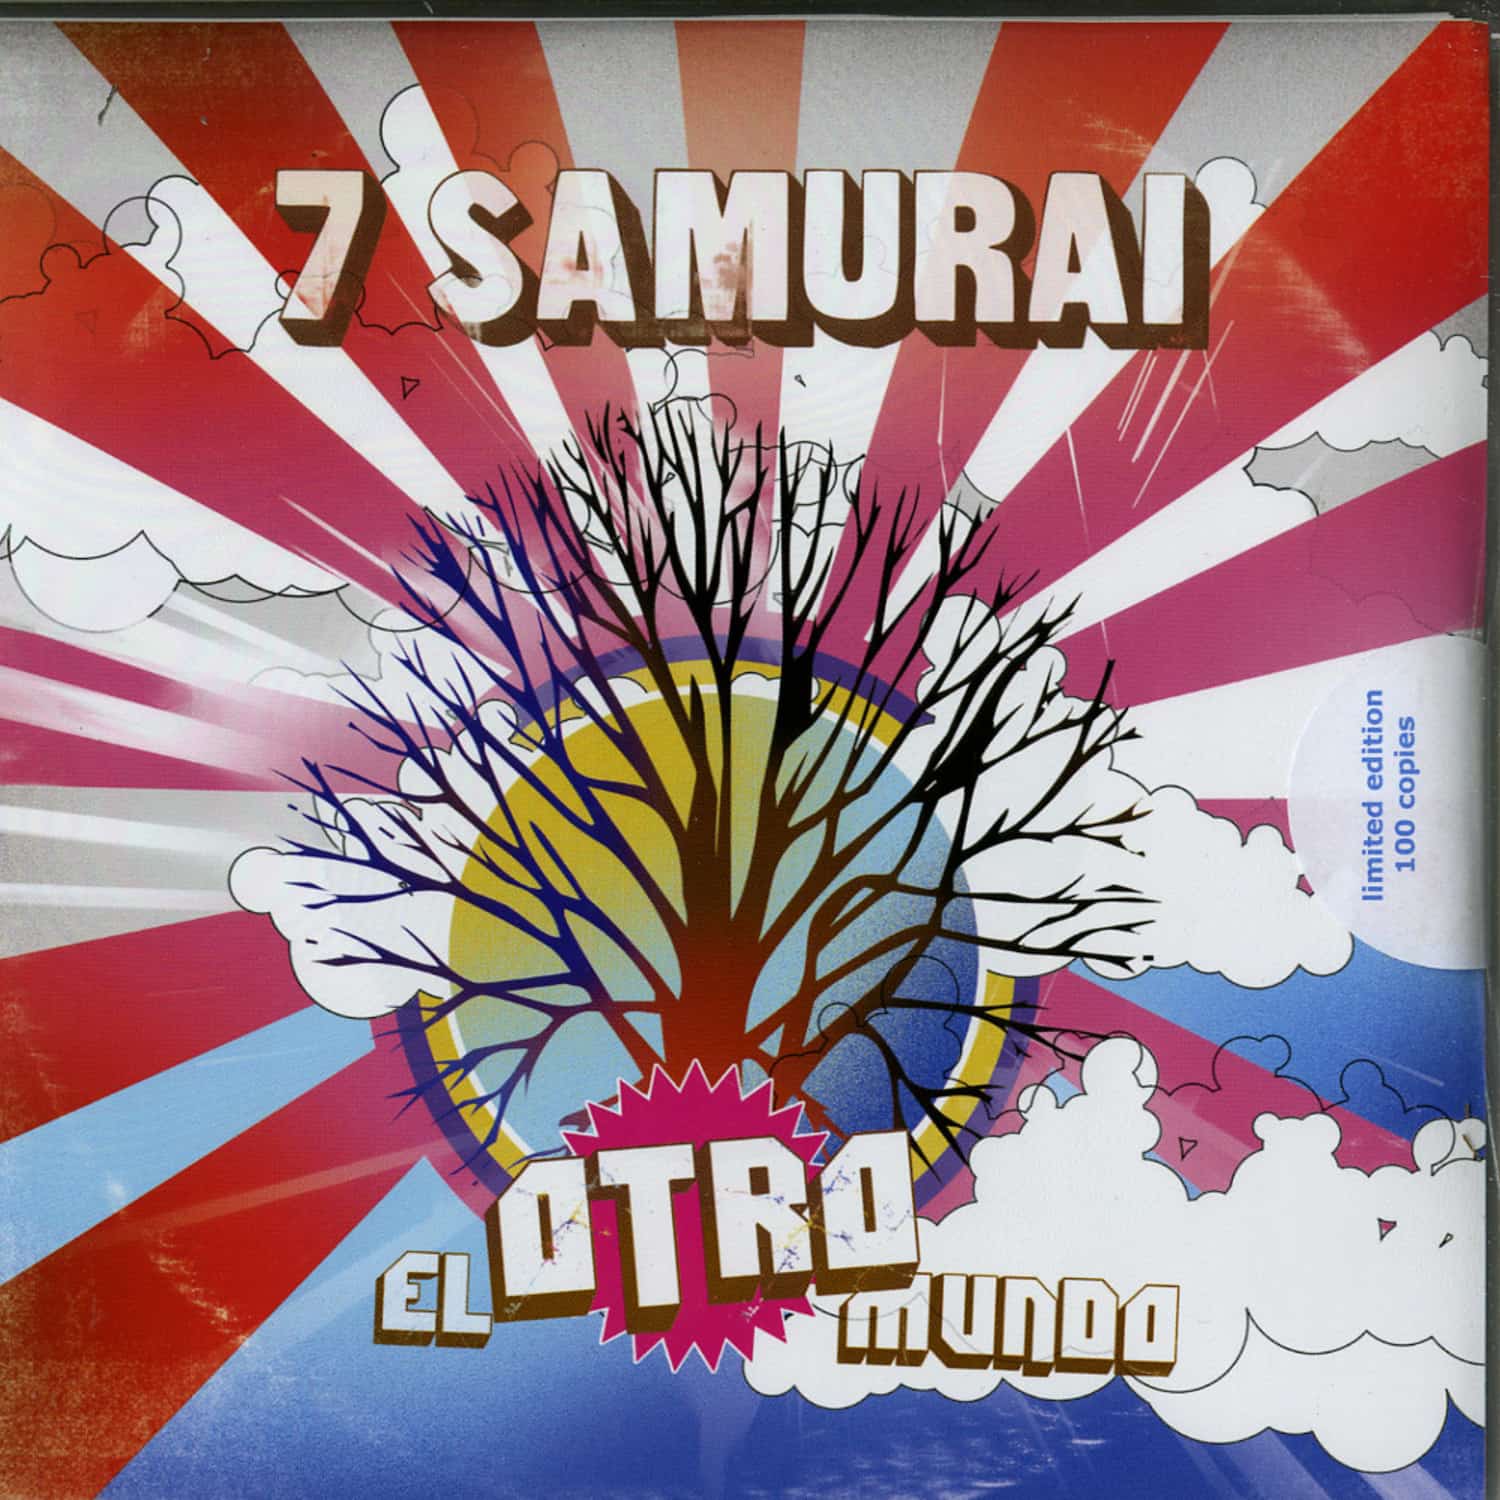 7 Samurai - EL OTRO MUNDO 